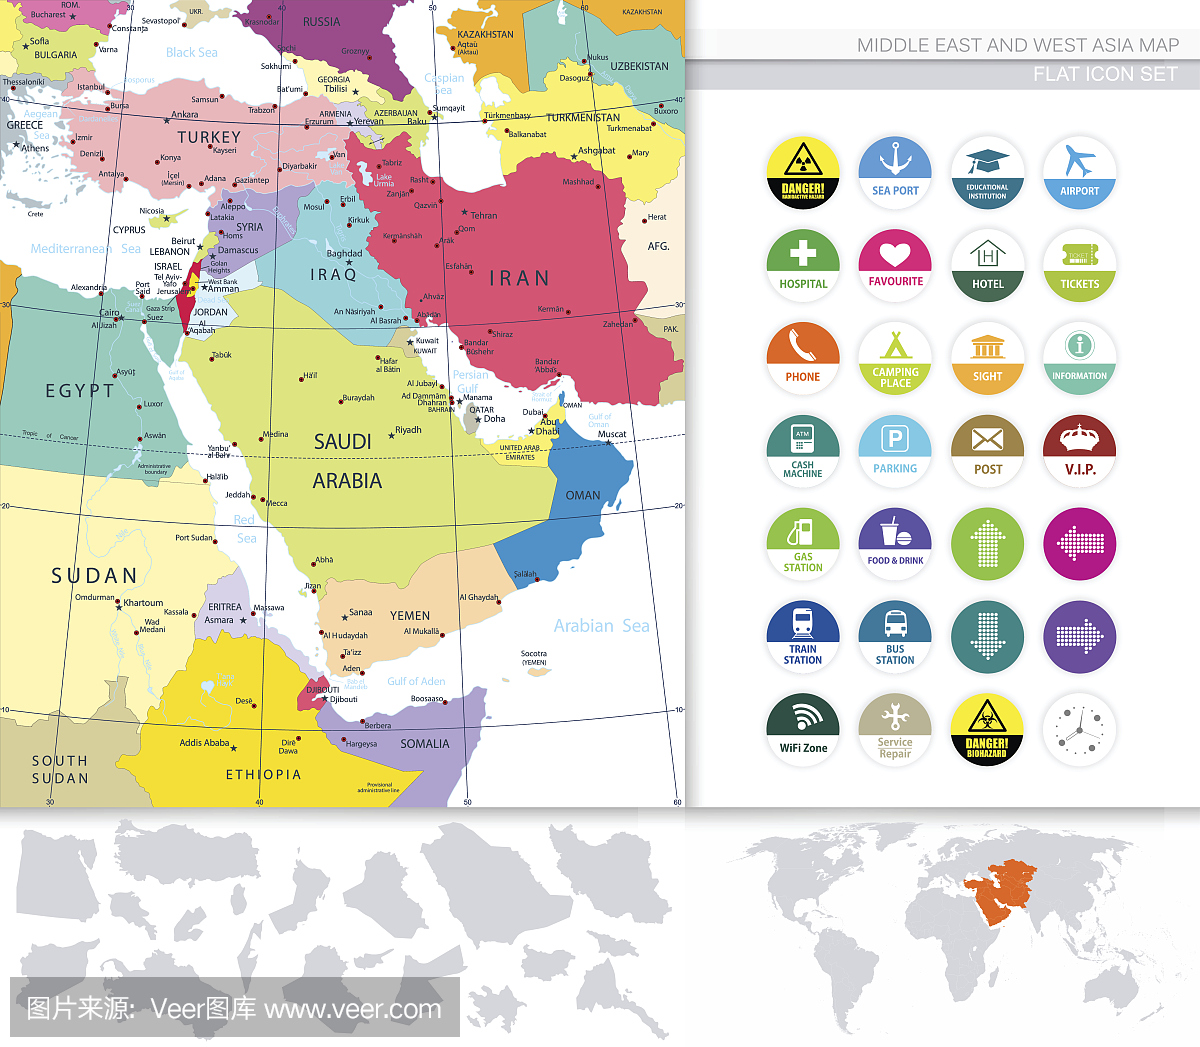 中东和西亚地图和平面图标